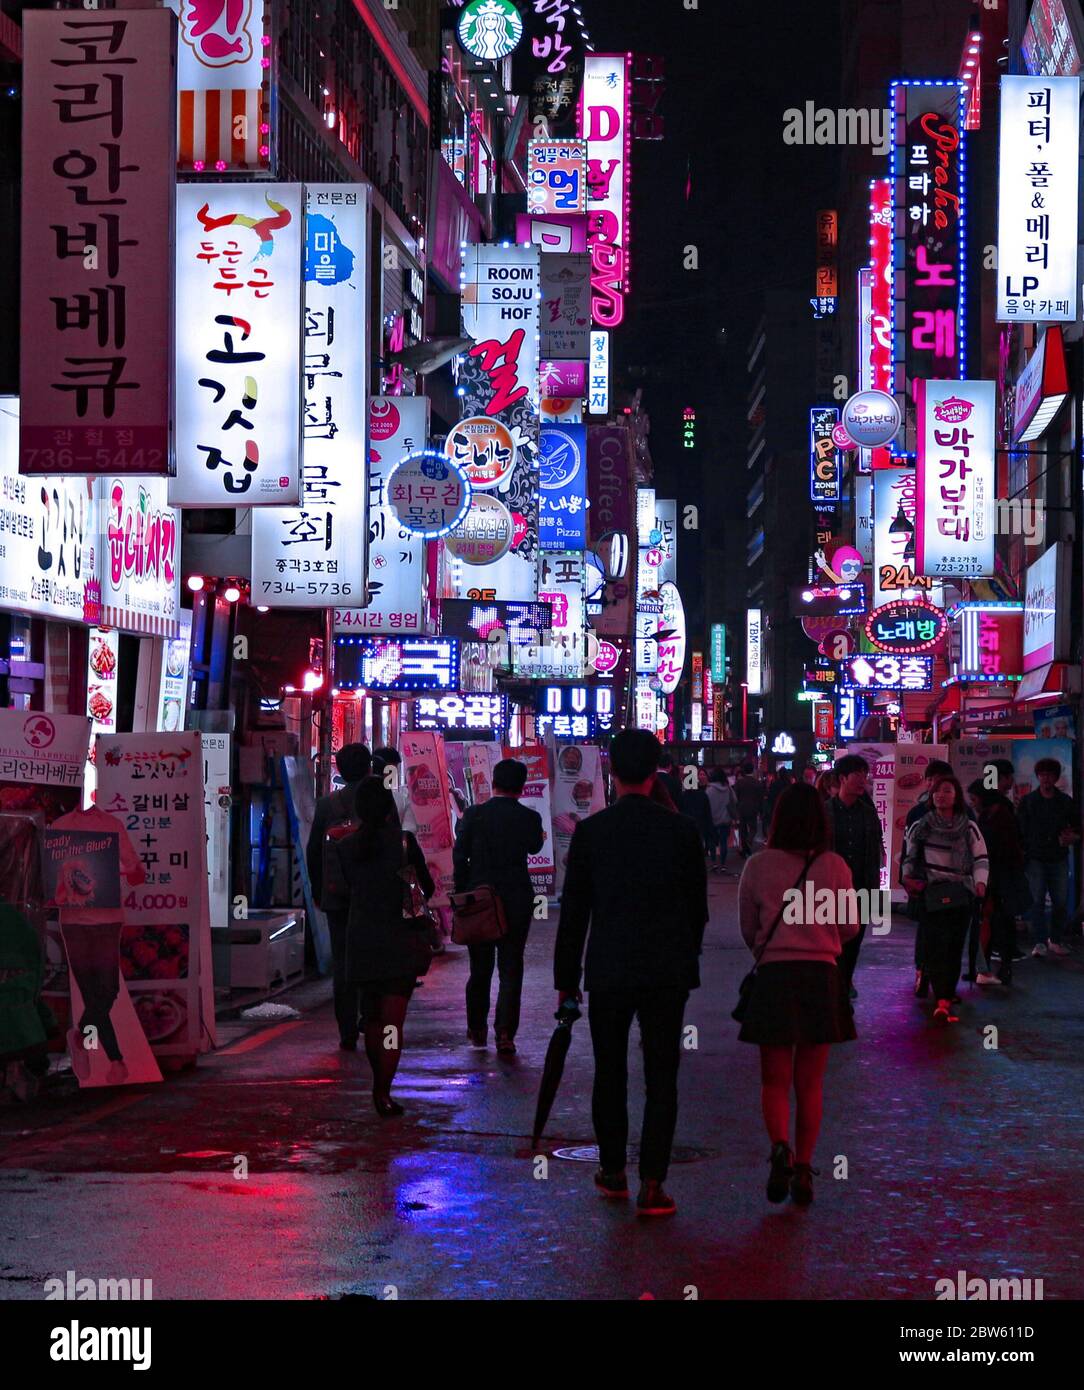 Une nuit de pluie en descendant dans l'une des rues commerçantes avec des enseignes de magasins de néons de Myeong dong, Séoul, Corée du Sud Banque D'Images